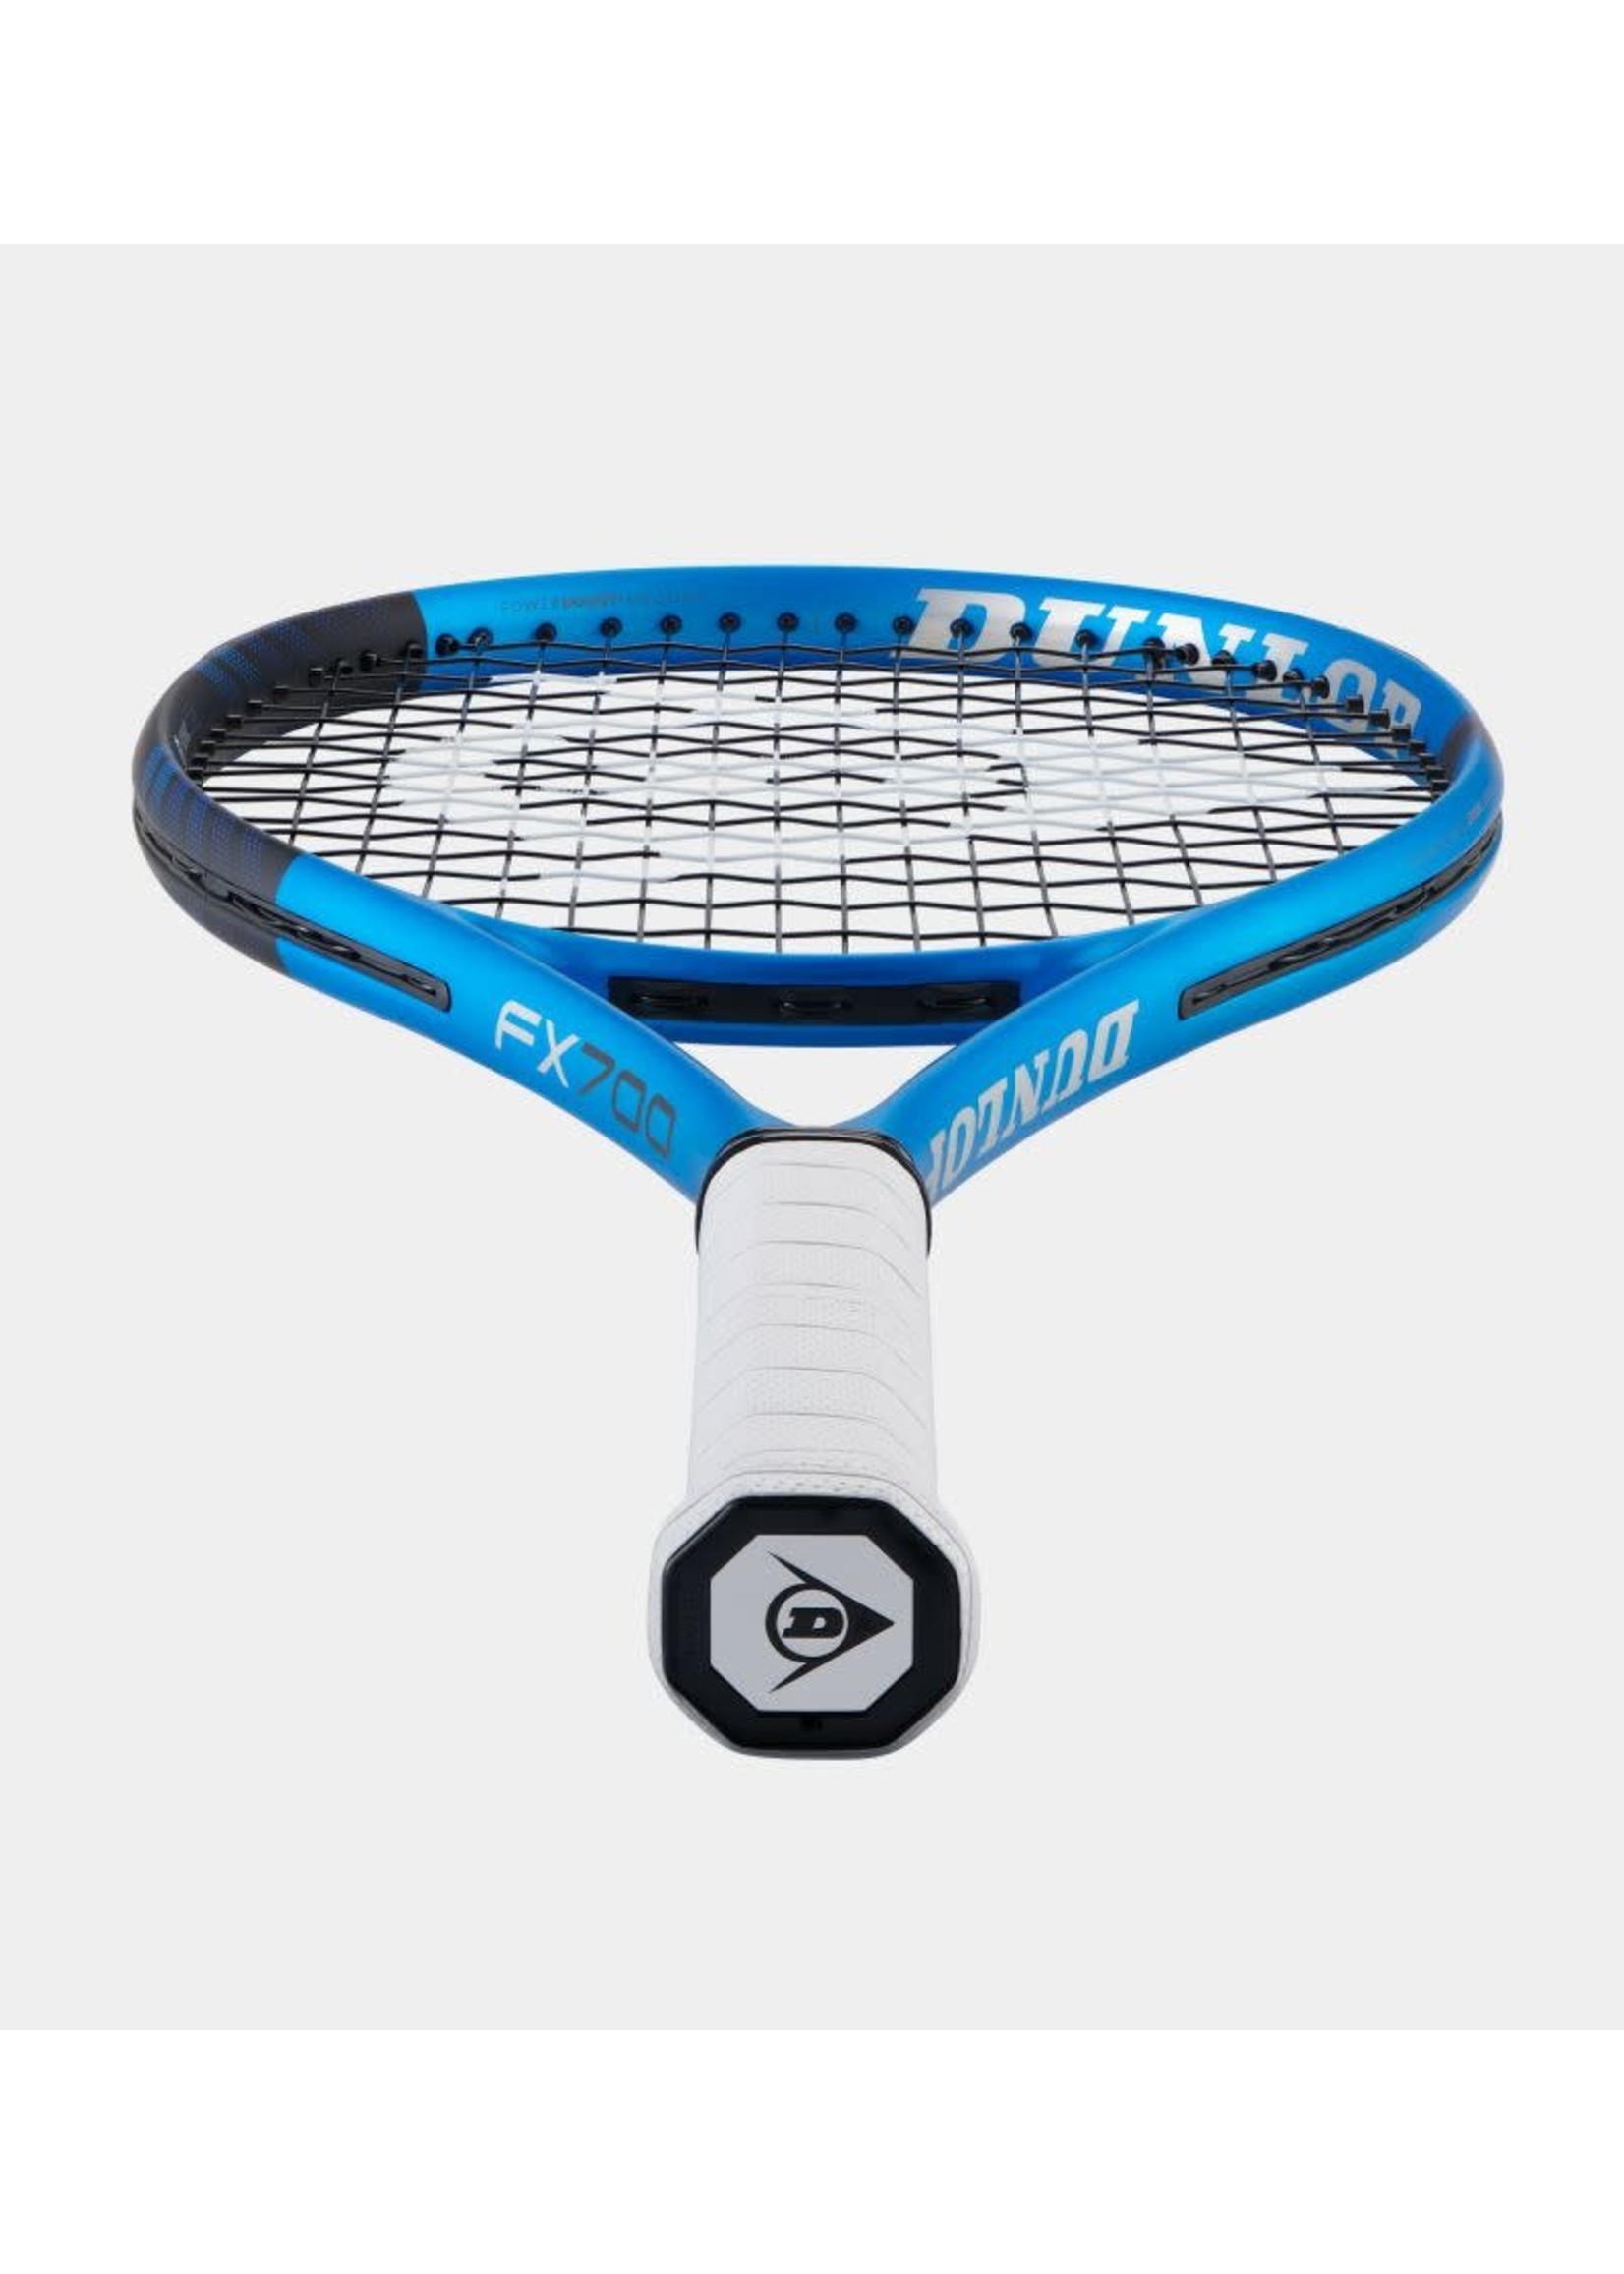 Dunlop Srixon Dunlop FX 700 Tennis Racket (2023)